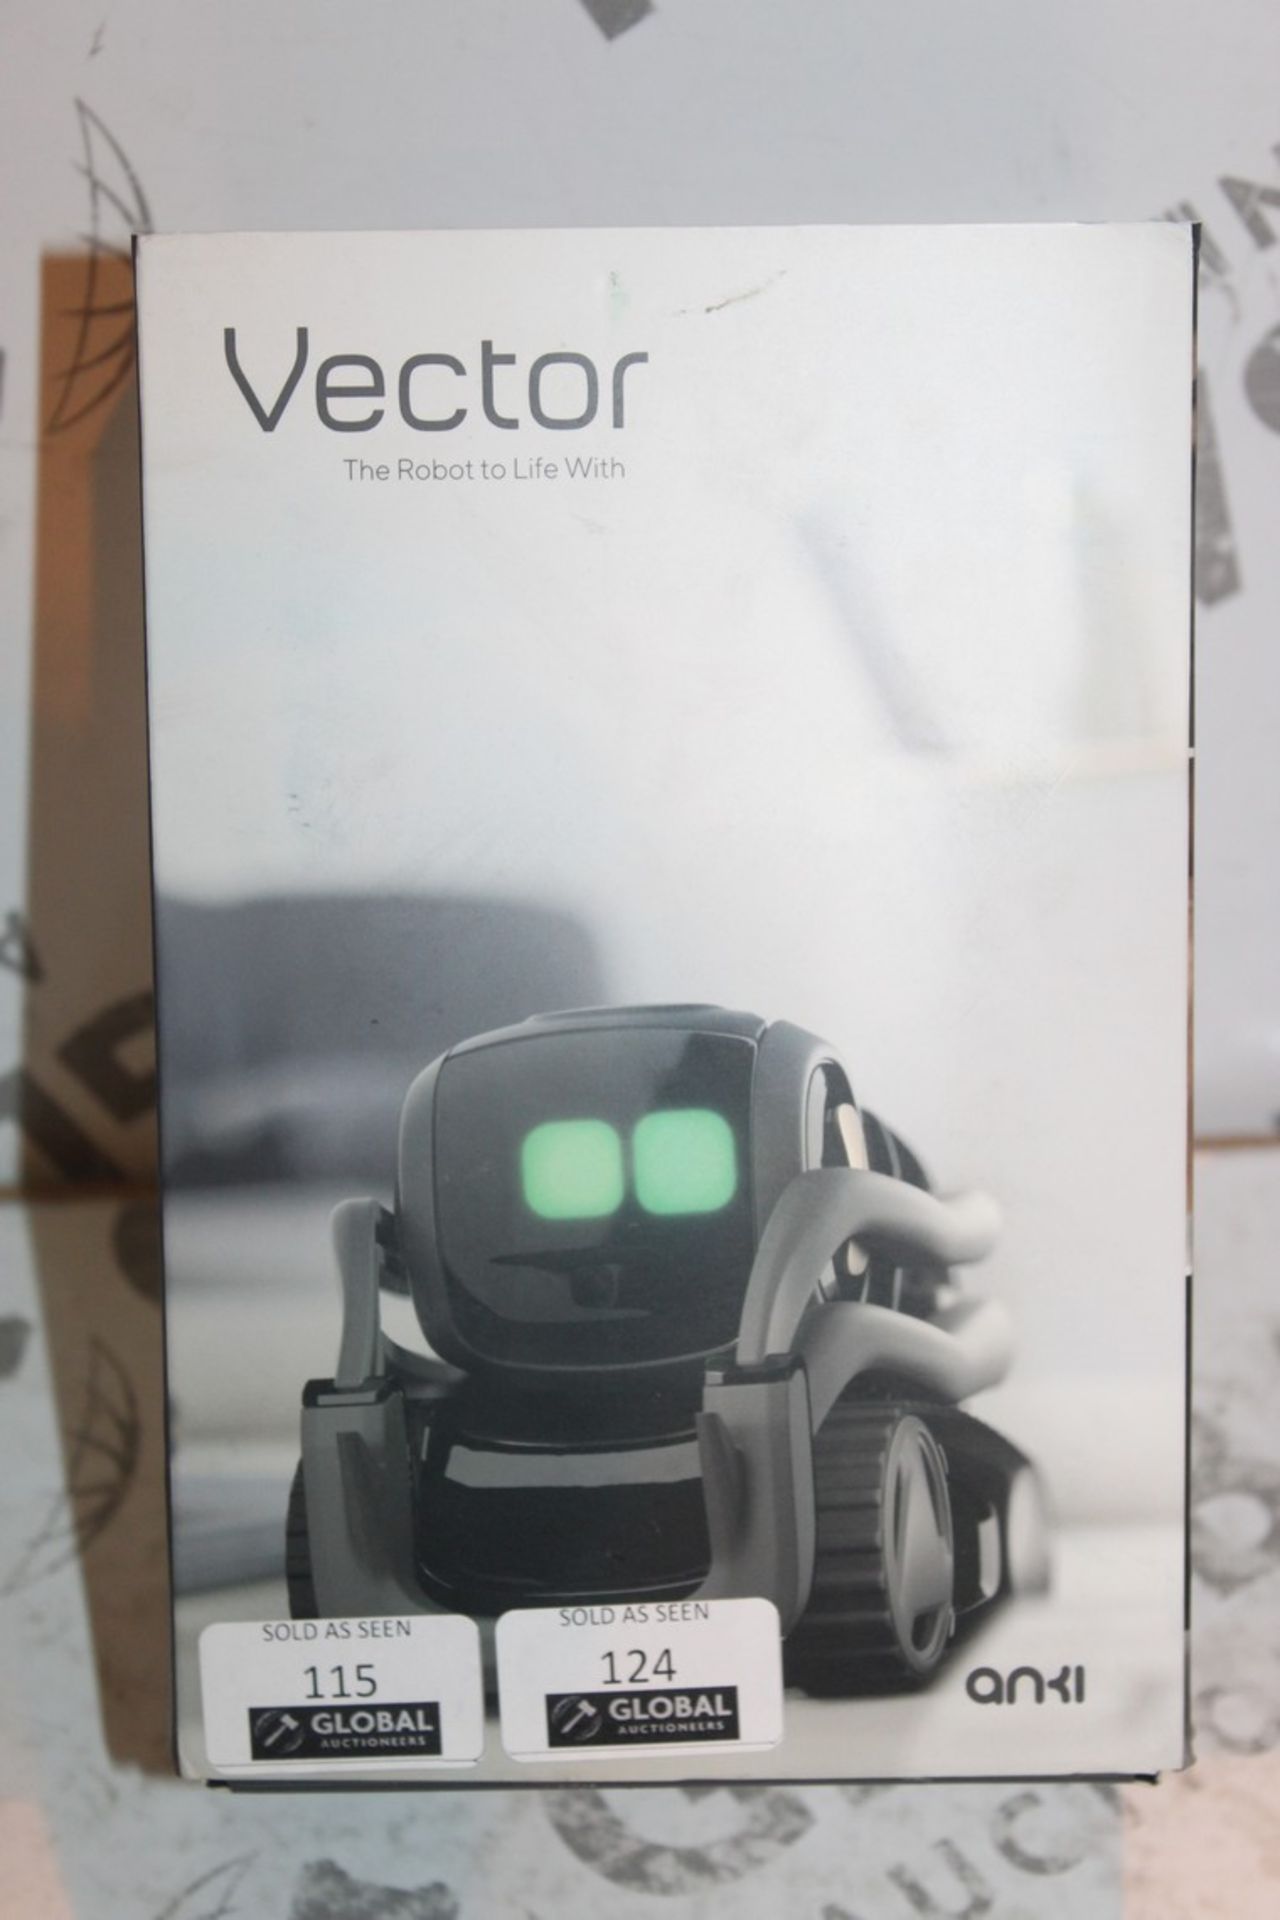 Boxed Anki Vector Robot RRP £249